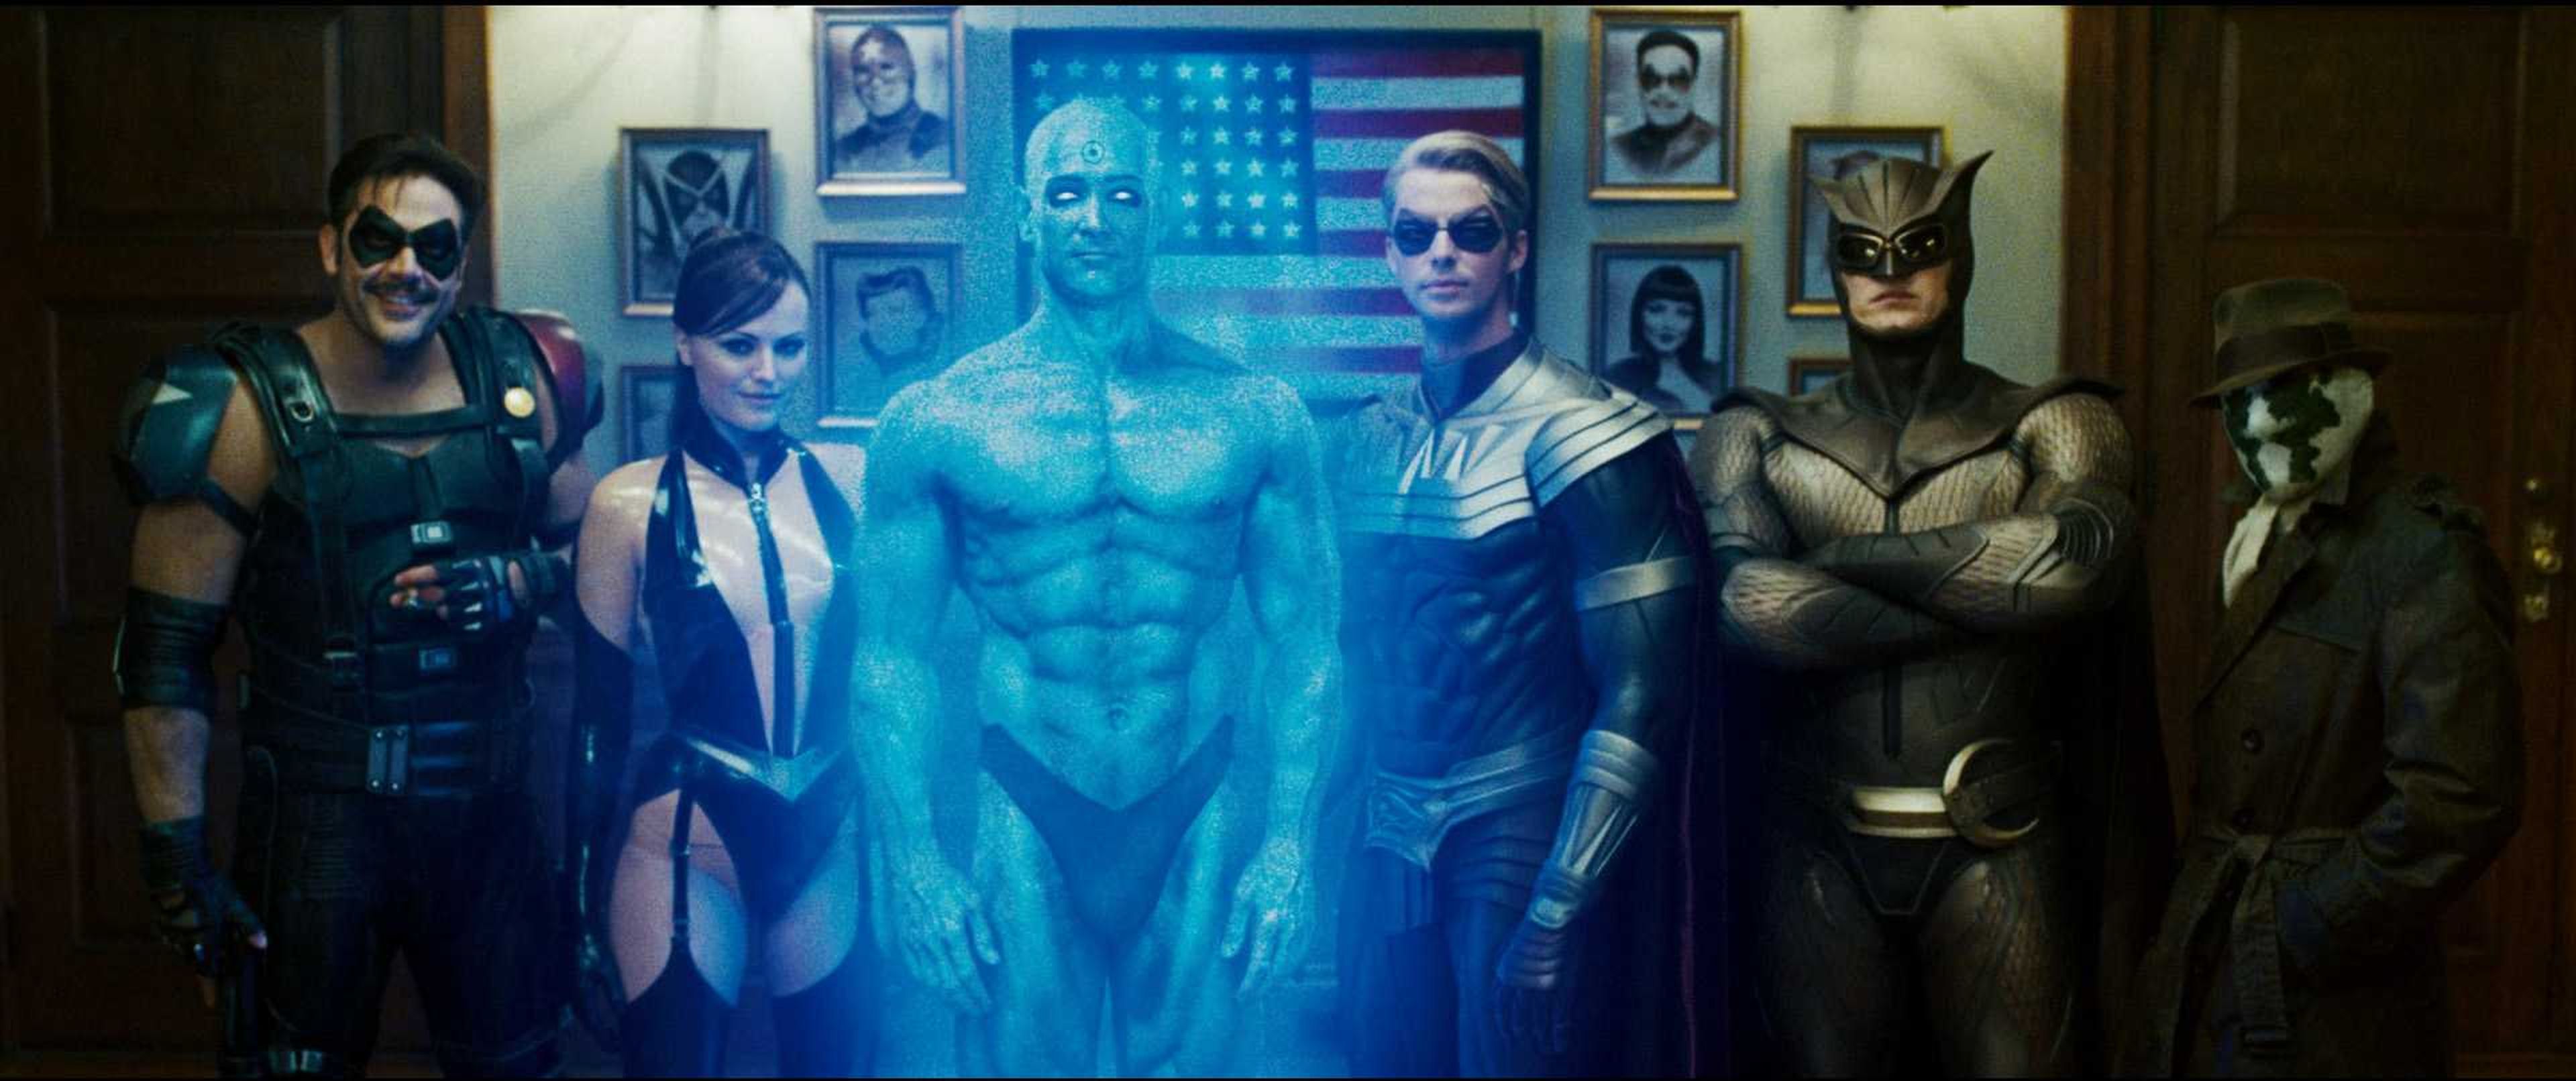 Cine de superhéroes: Crítica de Watchmen